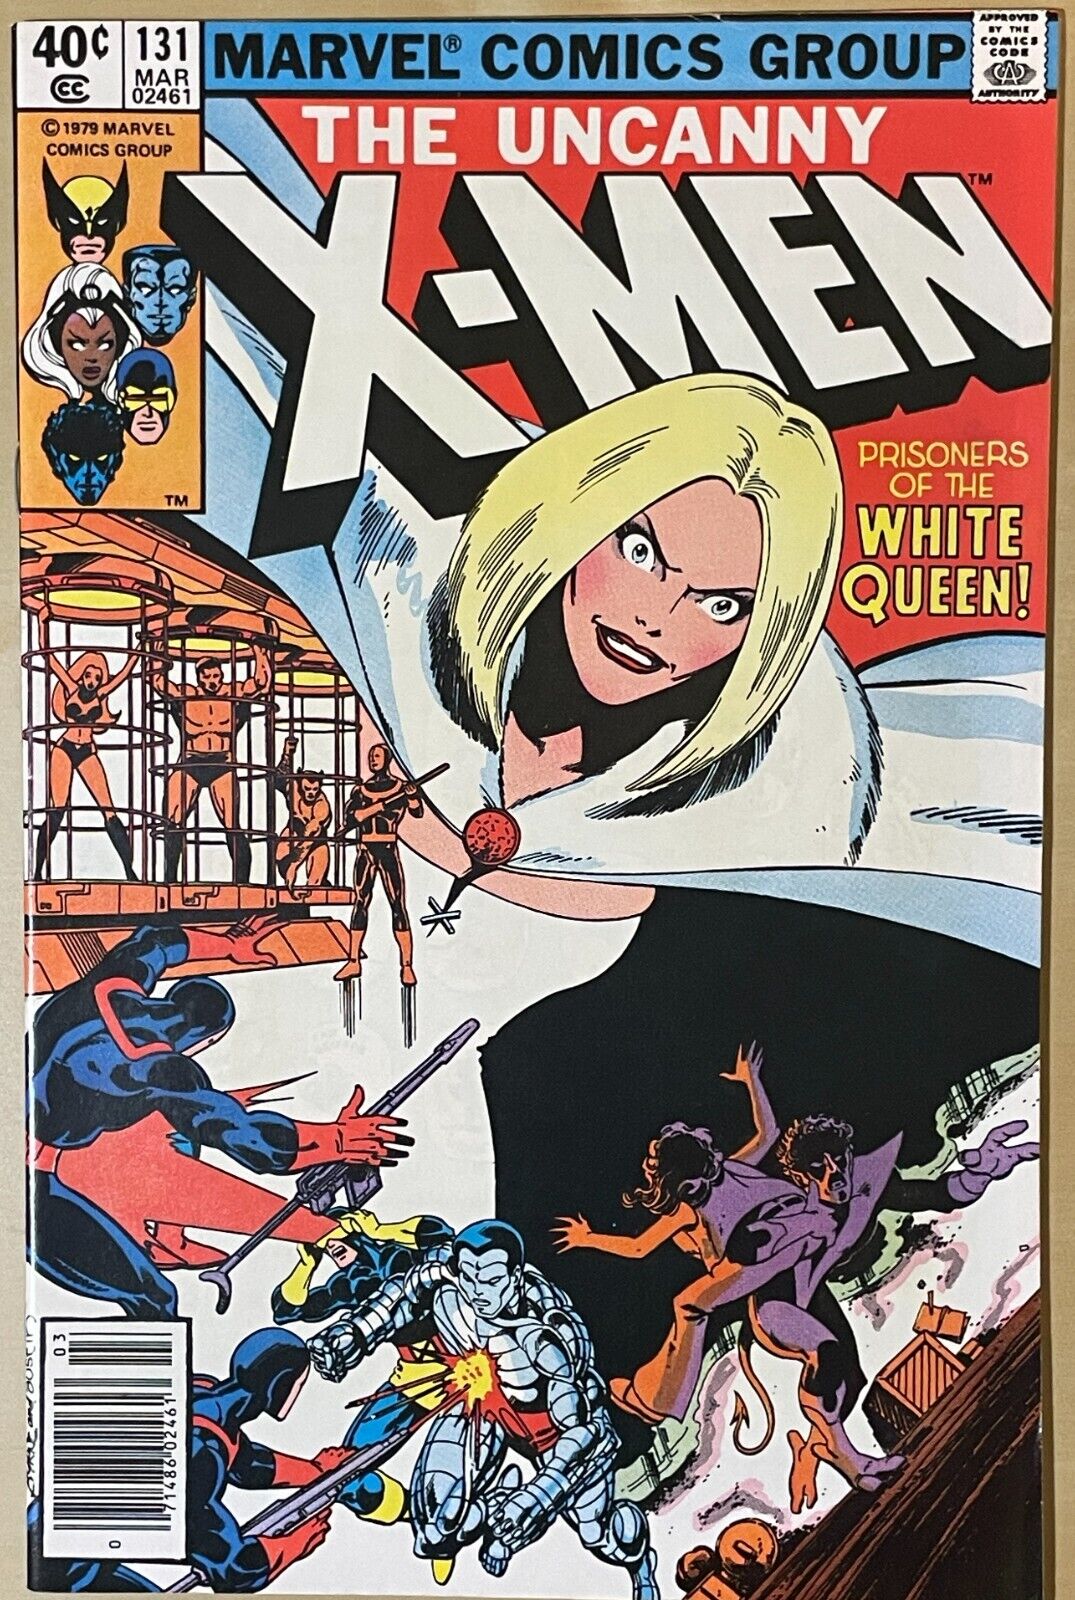 UNCANNY X-MEN #131 (1980) VFNM to NM HIGH GRADE JOHN BYRNE MARVEL COMICS